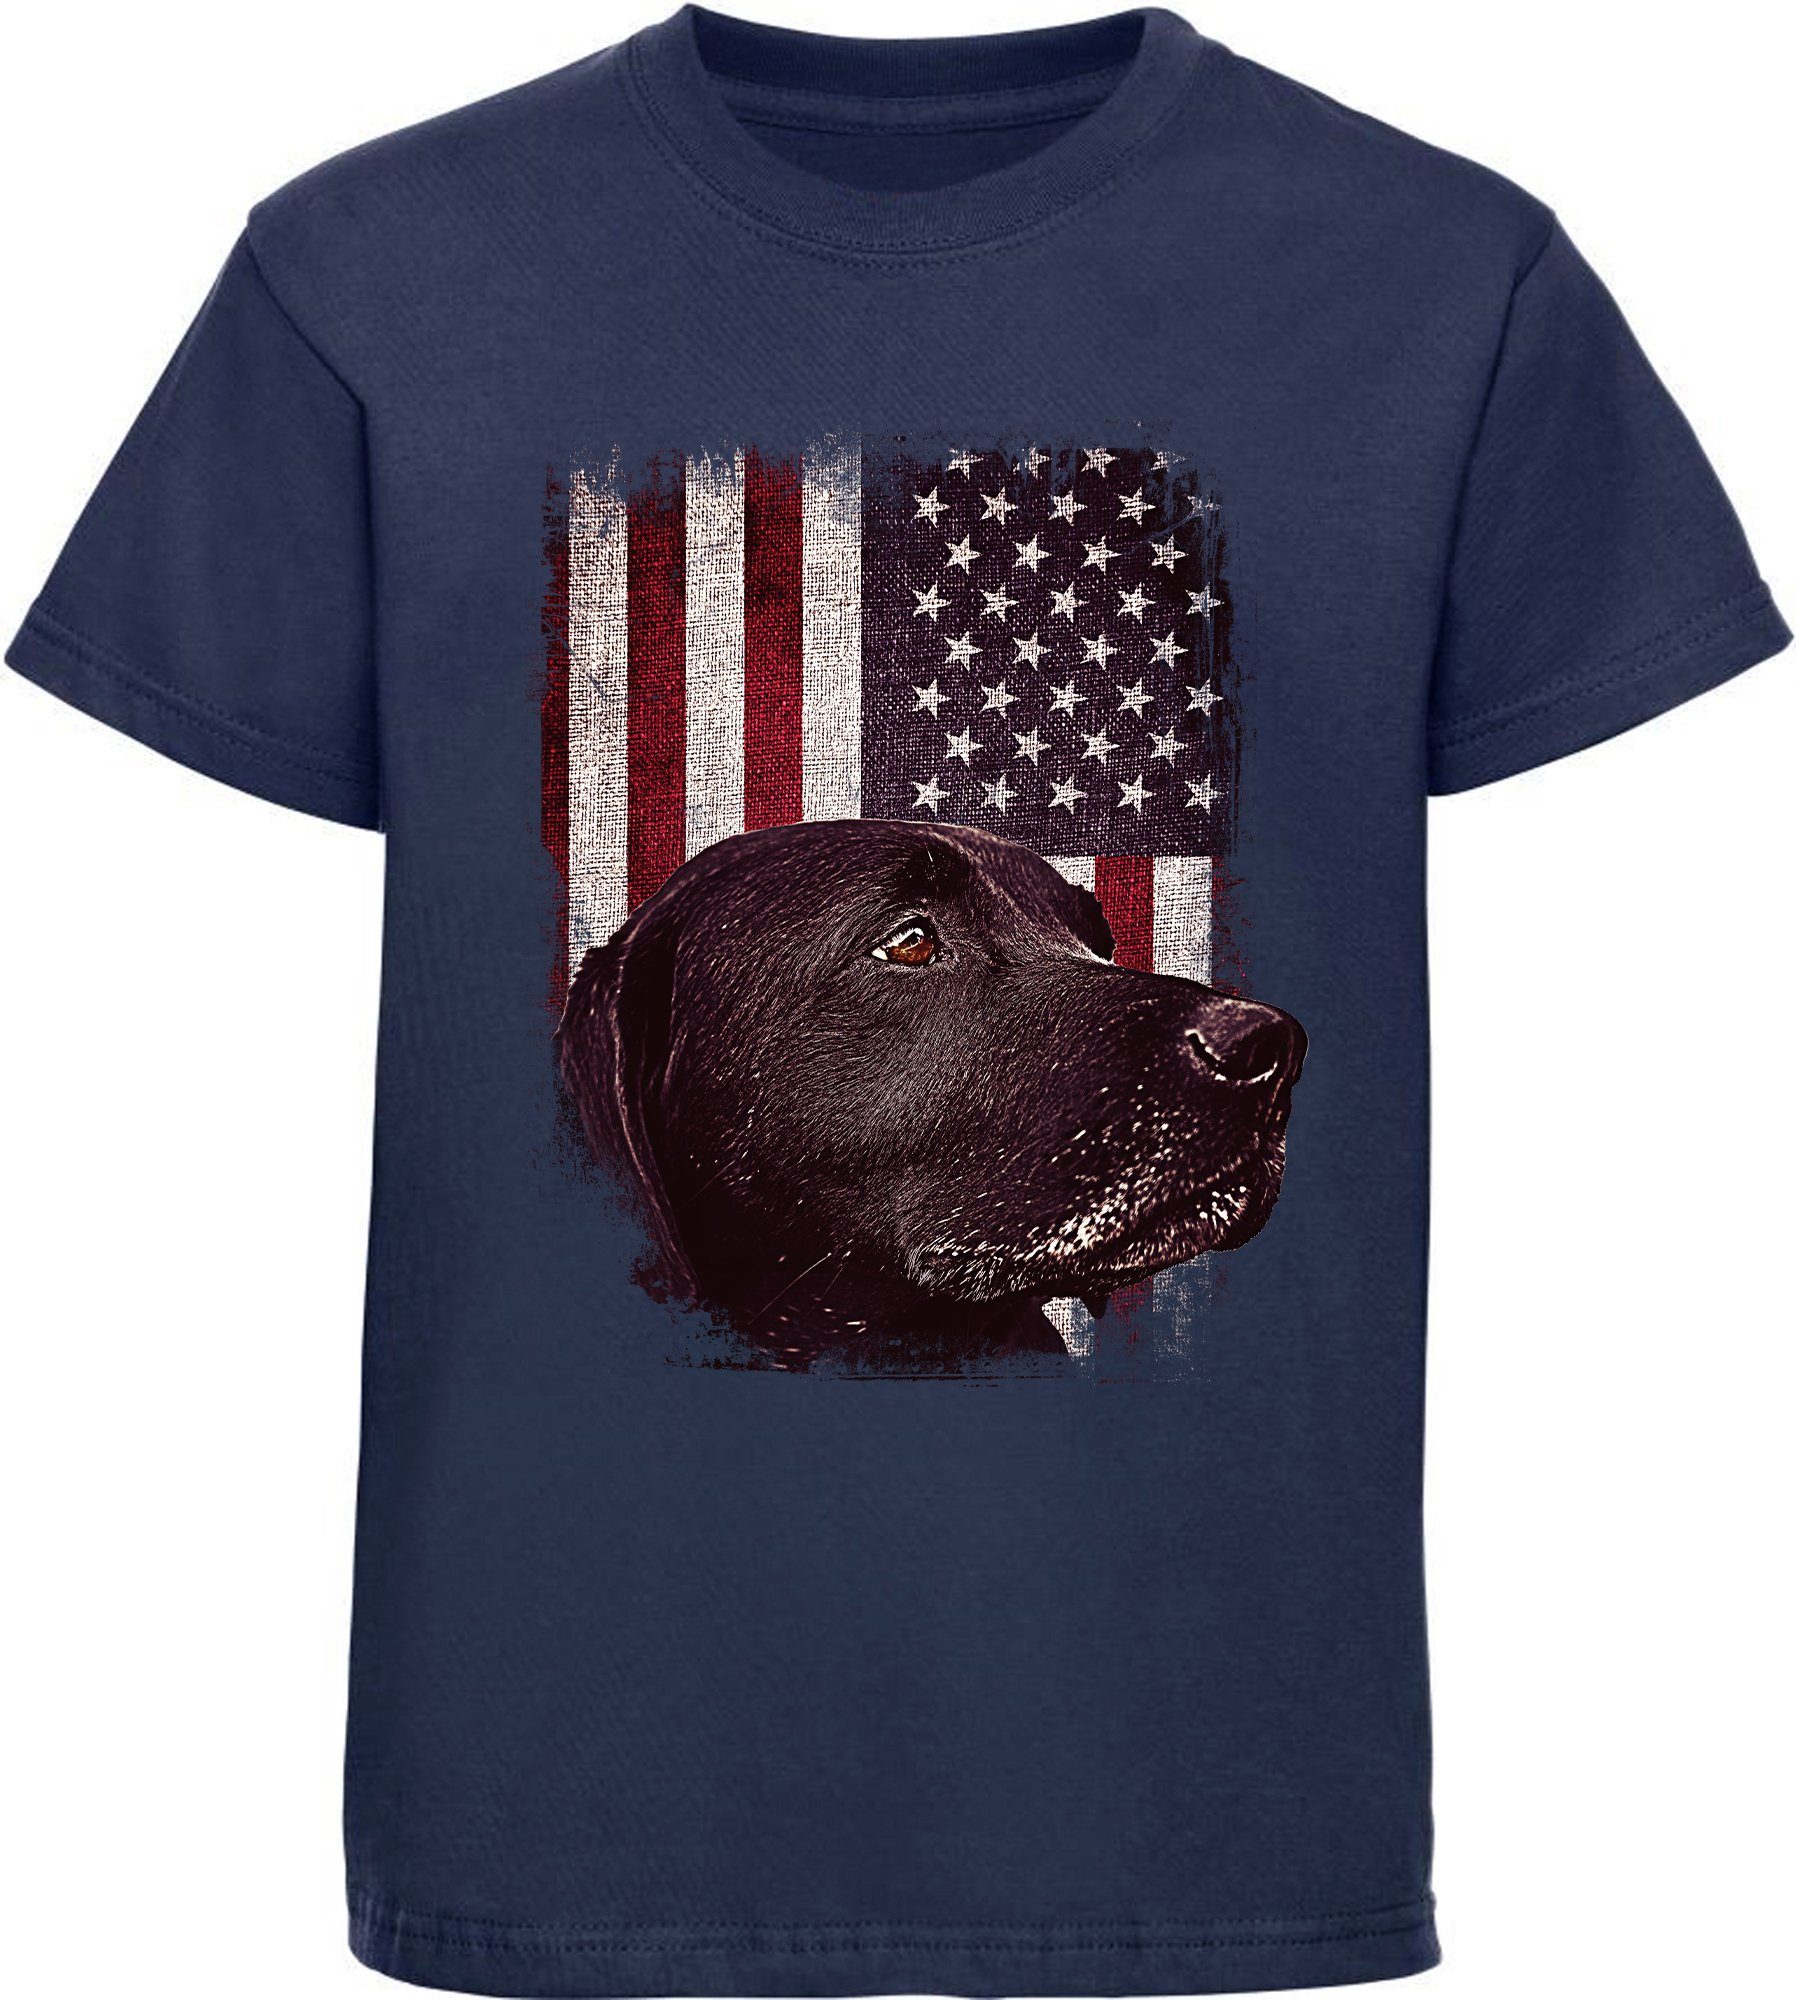 MyDesign24 T-Shirt Kinder Hunde Print Shirt bedruckt - schwarzer Labrador vor USA Flagge Baumwollshirt mit Aufdruck, i246 navy blau